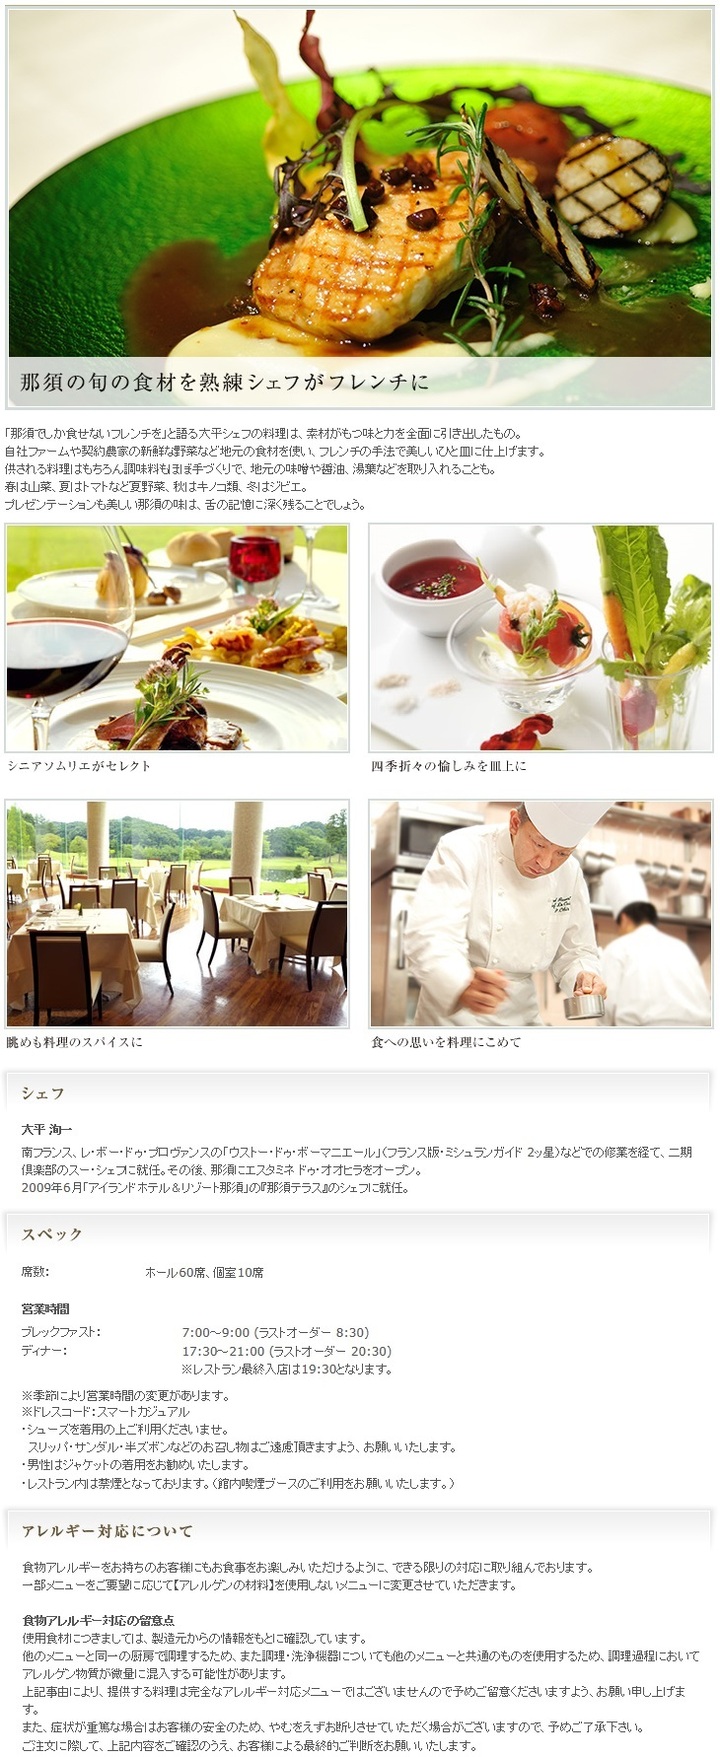 ■レストラン【那須テラス】